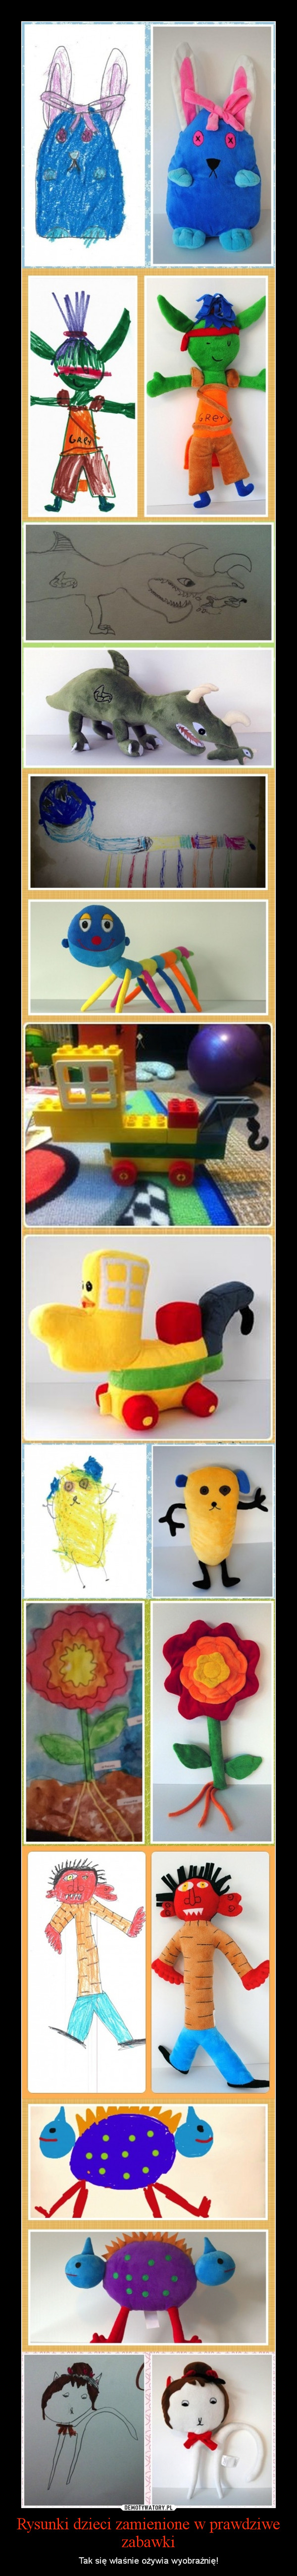 Rysunki dzieci zamienione w prawdziwe zabawki – Tak się właśnie ożywia wyobraźnię! 